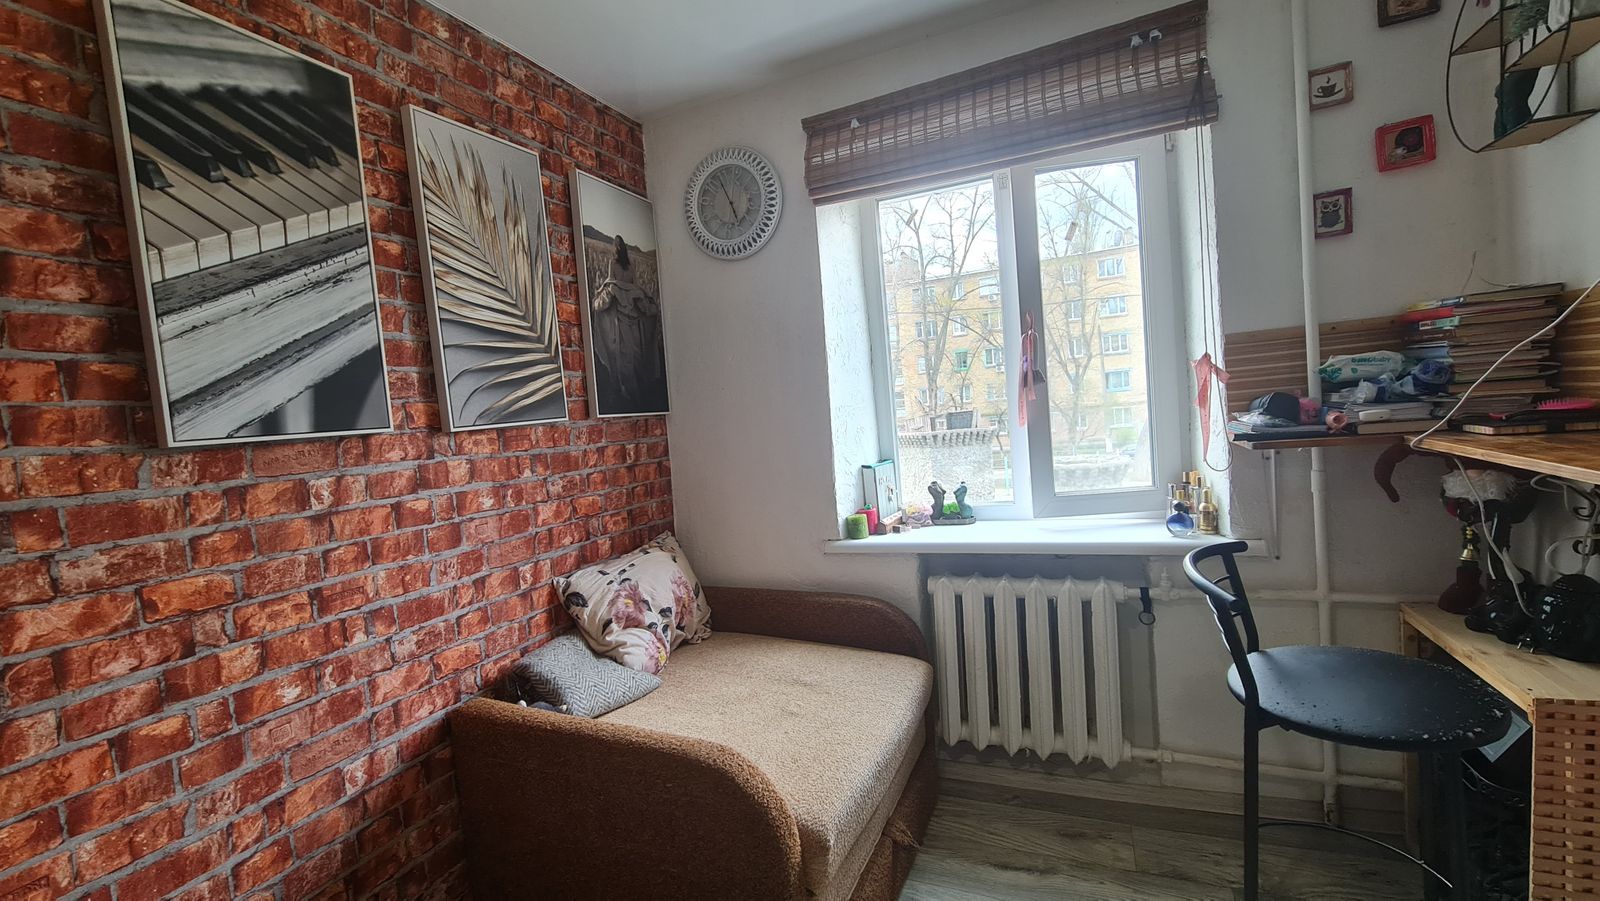 Однокомнатная квартира в Киеве - сколько стоит бюджетное жилье - Недвижимость